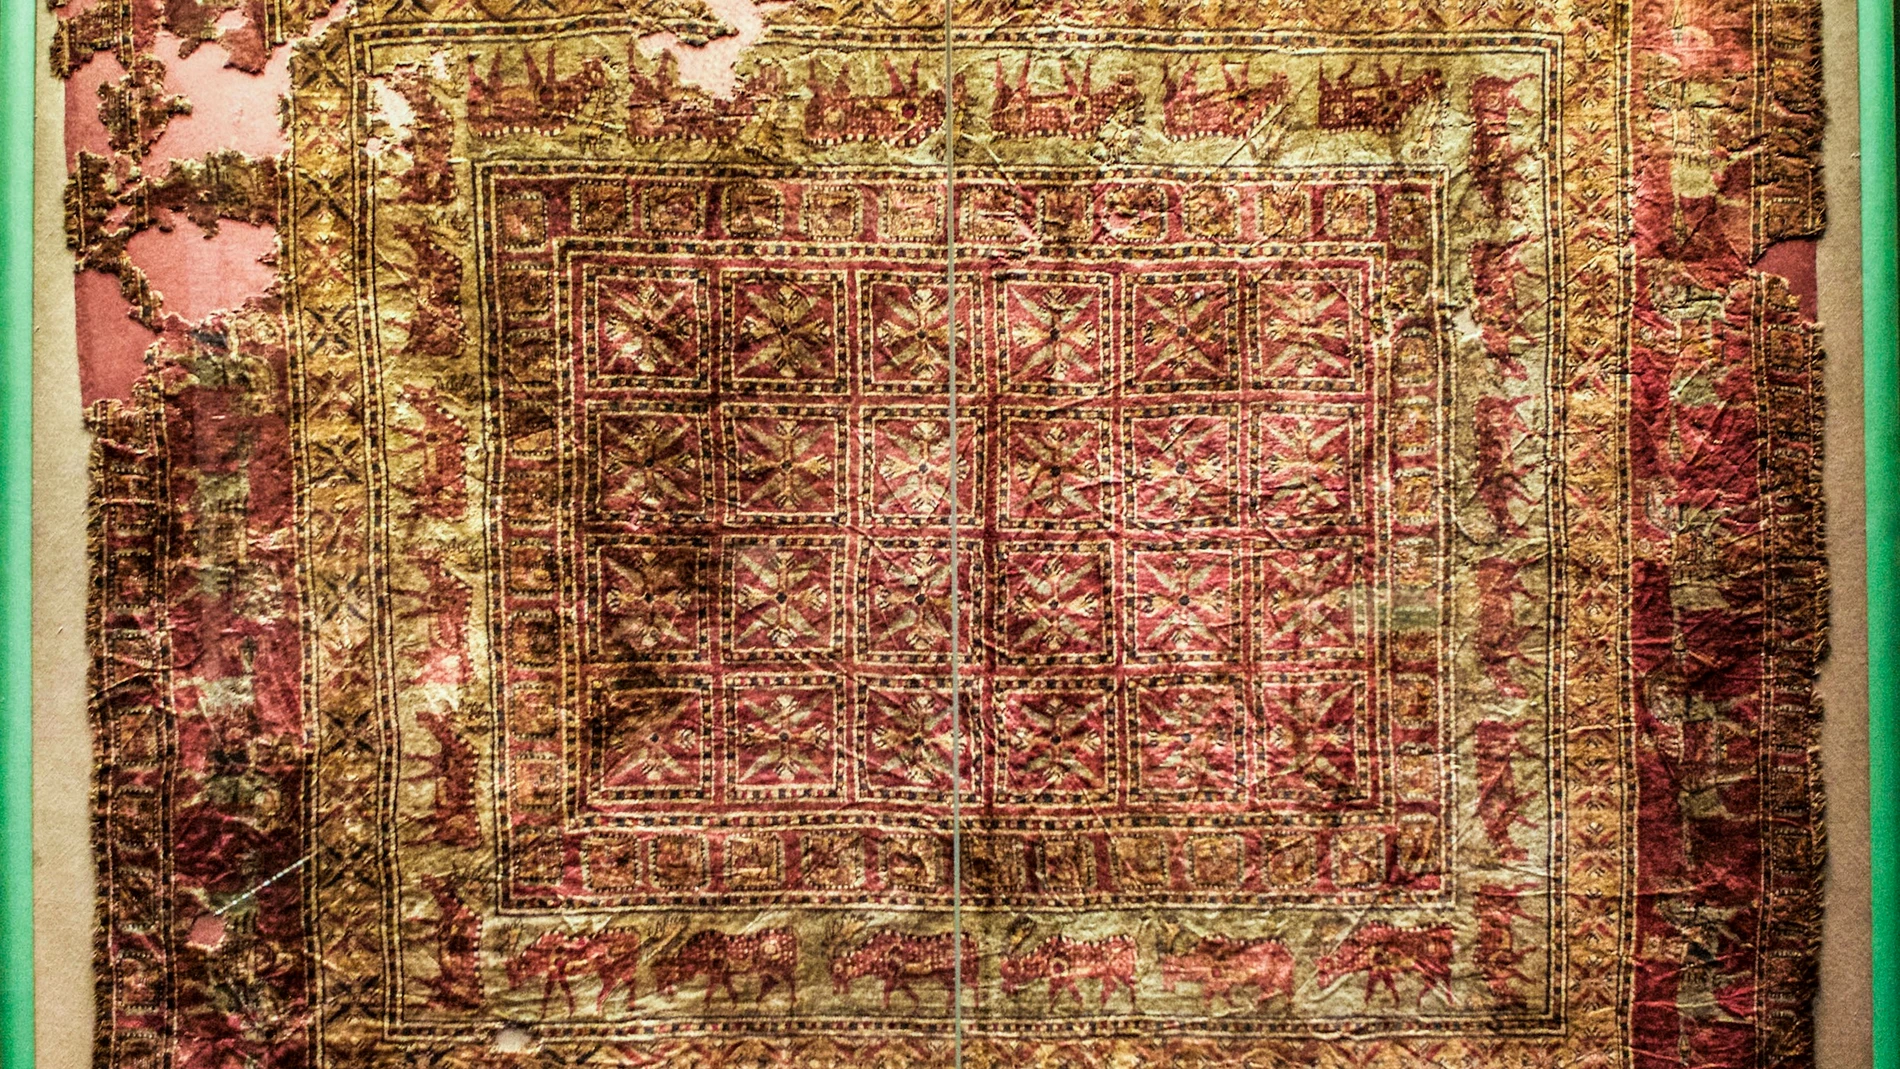 La alfombra Pazyryk tiene aproximadamente 2400 años de antigüedad, y sus colores siguen siendo muy vivos.